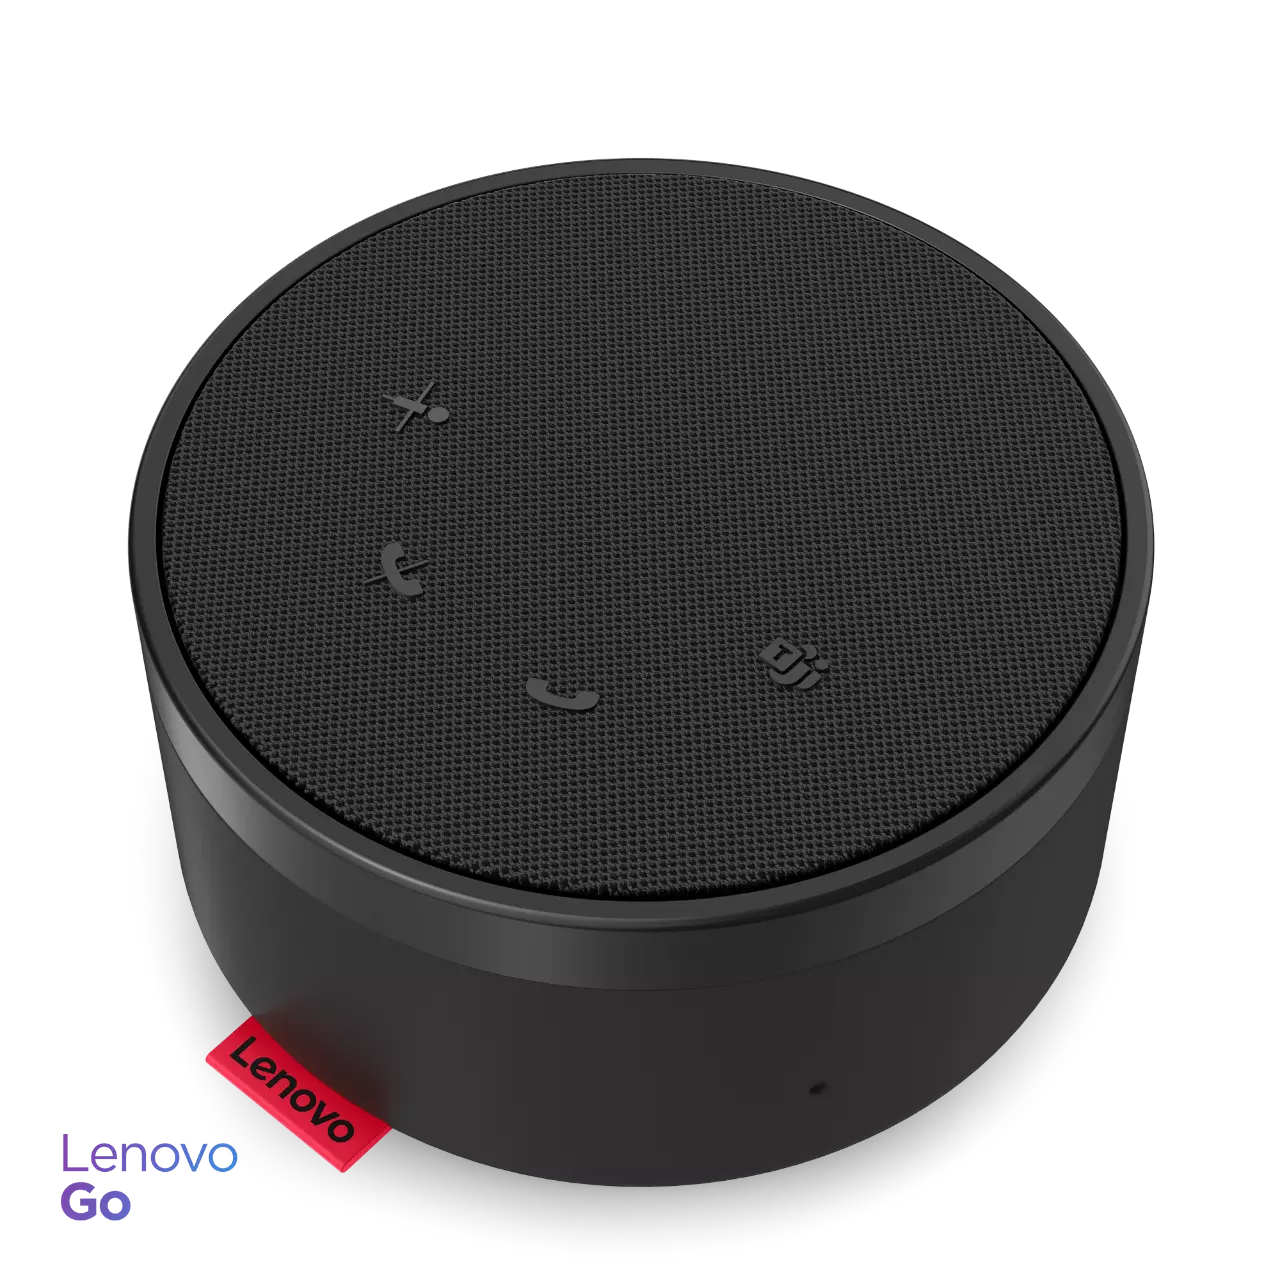 Lenovo Go USB Type-C スピーカーフォン(ブラック) | レノボ・ ジャパン